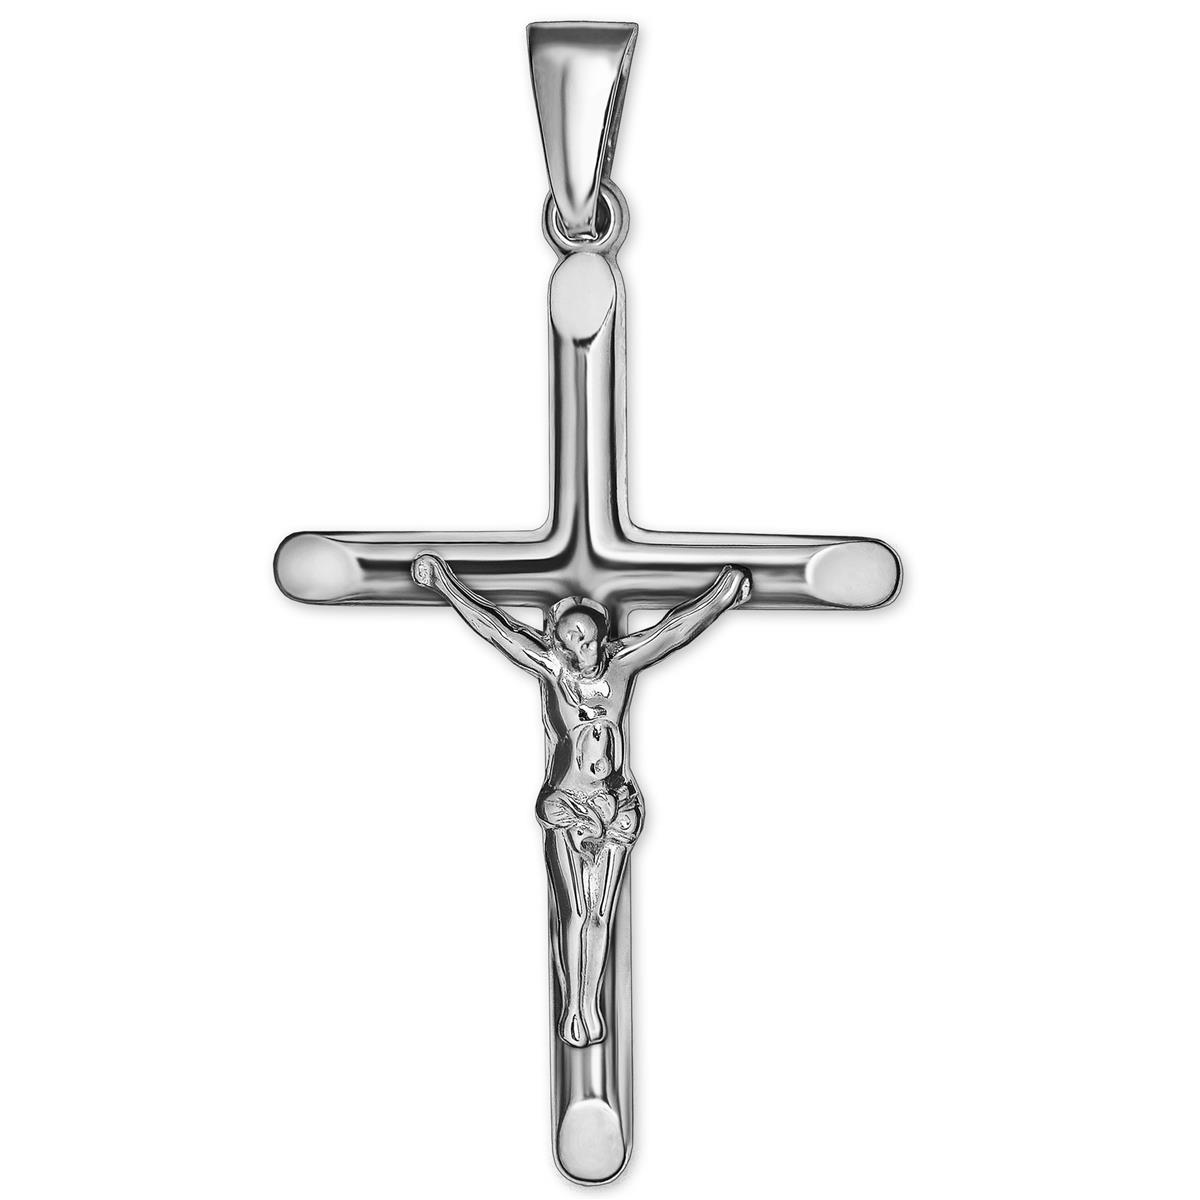 Silberner Anhänger Jesus Kreuz 27 mm schöne plastische Form Enden abgeflacht Echt Silber 925